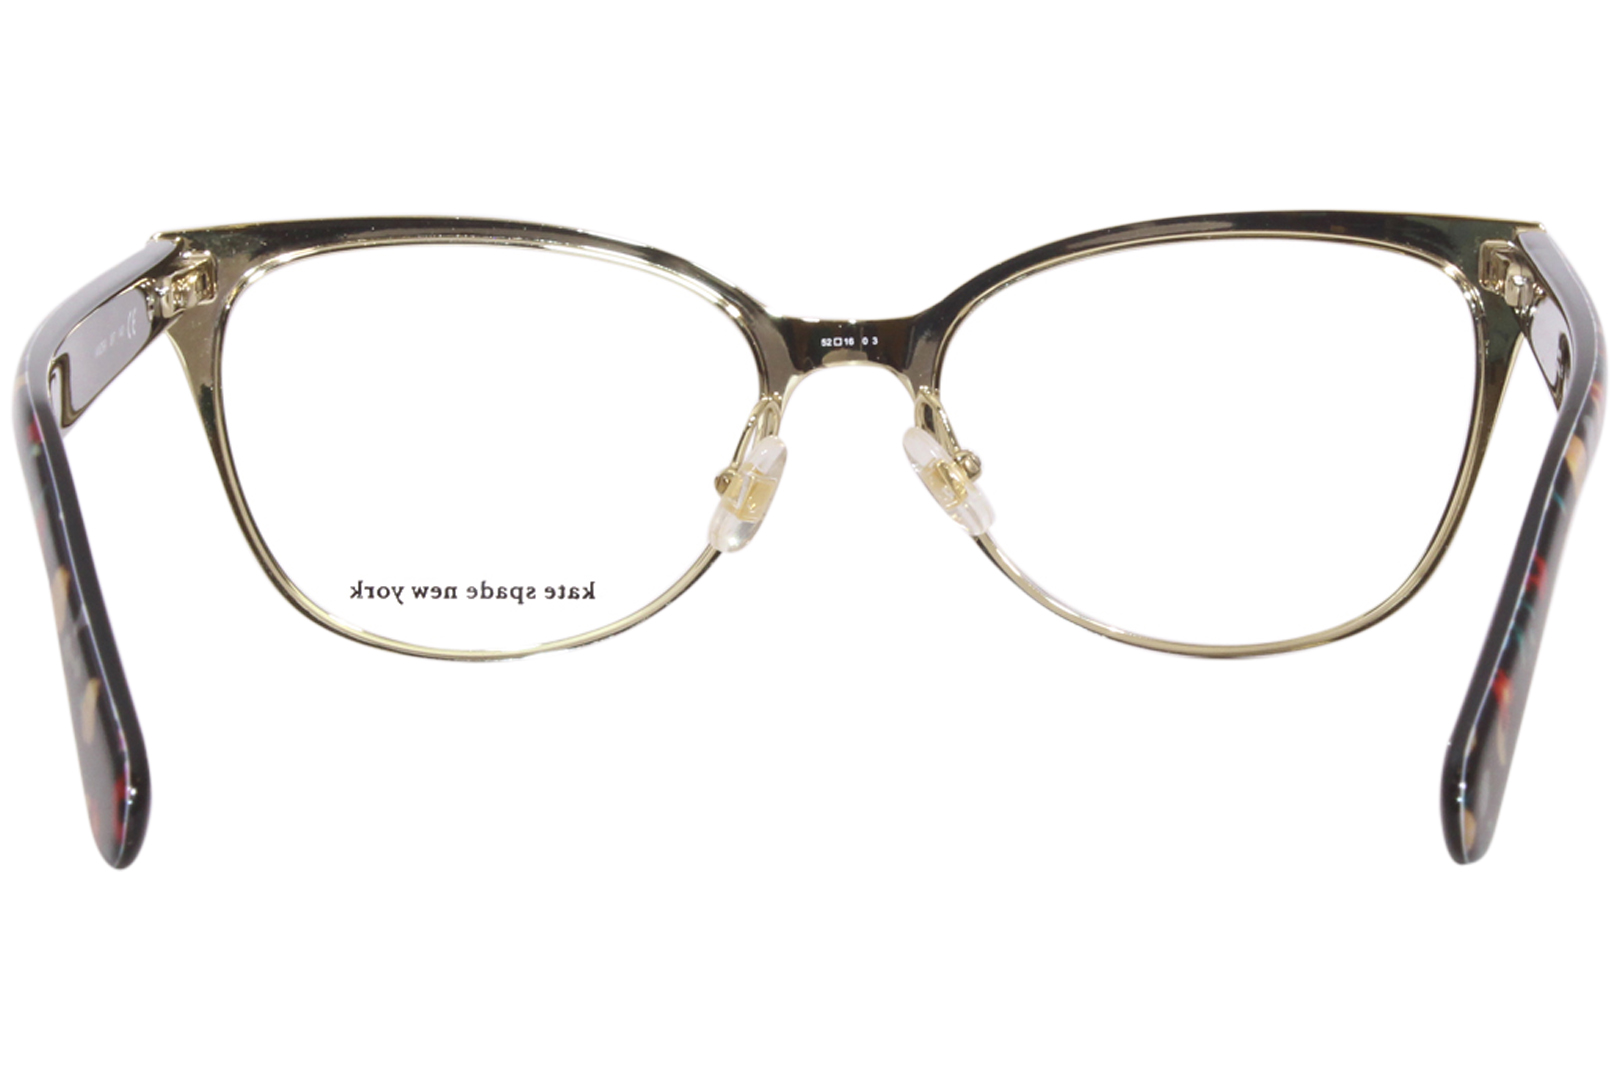 Kate Spade Vandra 807 Eyeglasses Women's Black Full Rim Cat Eye 52-16-140 |  